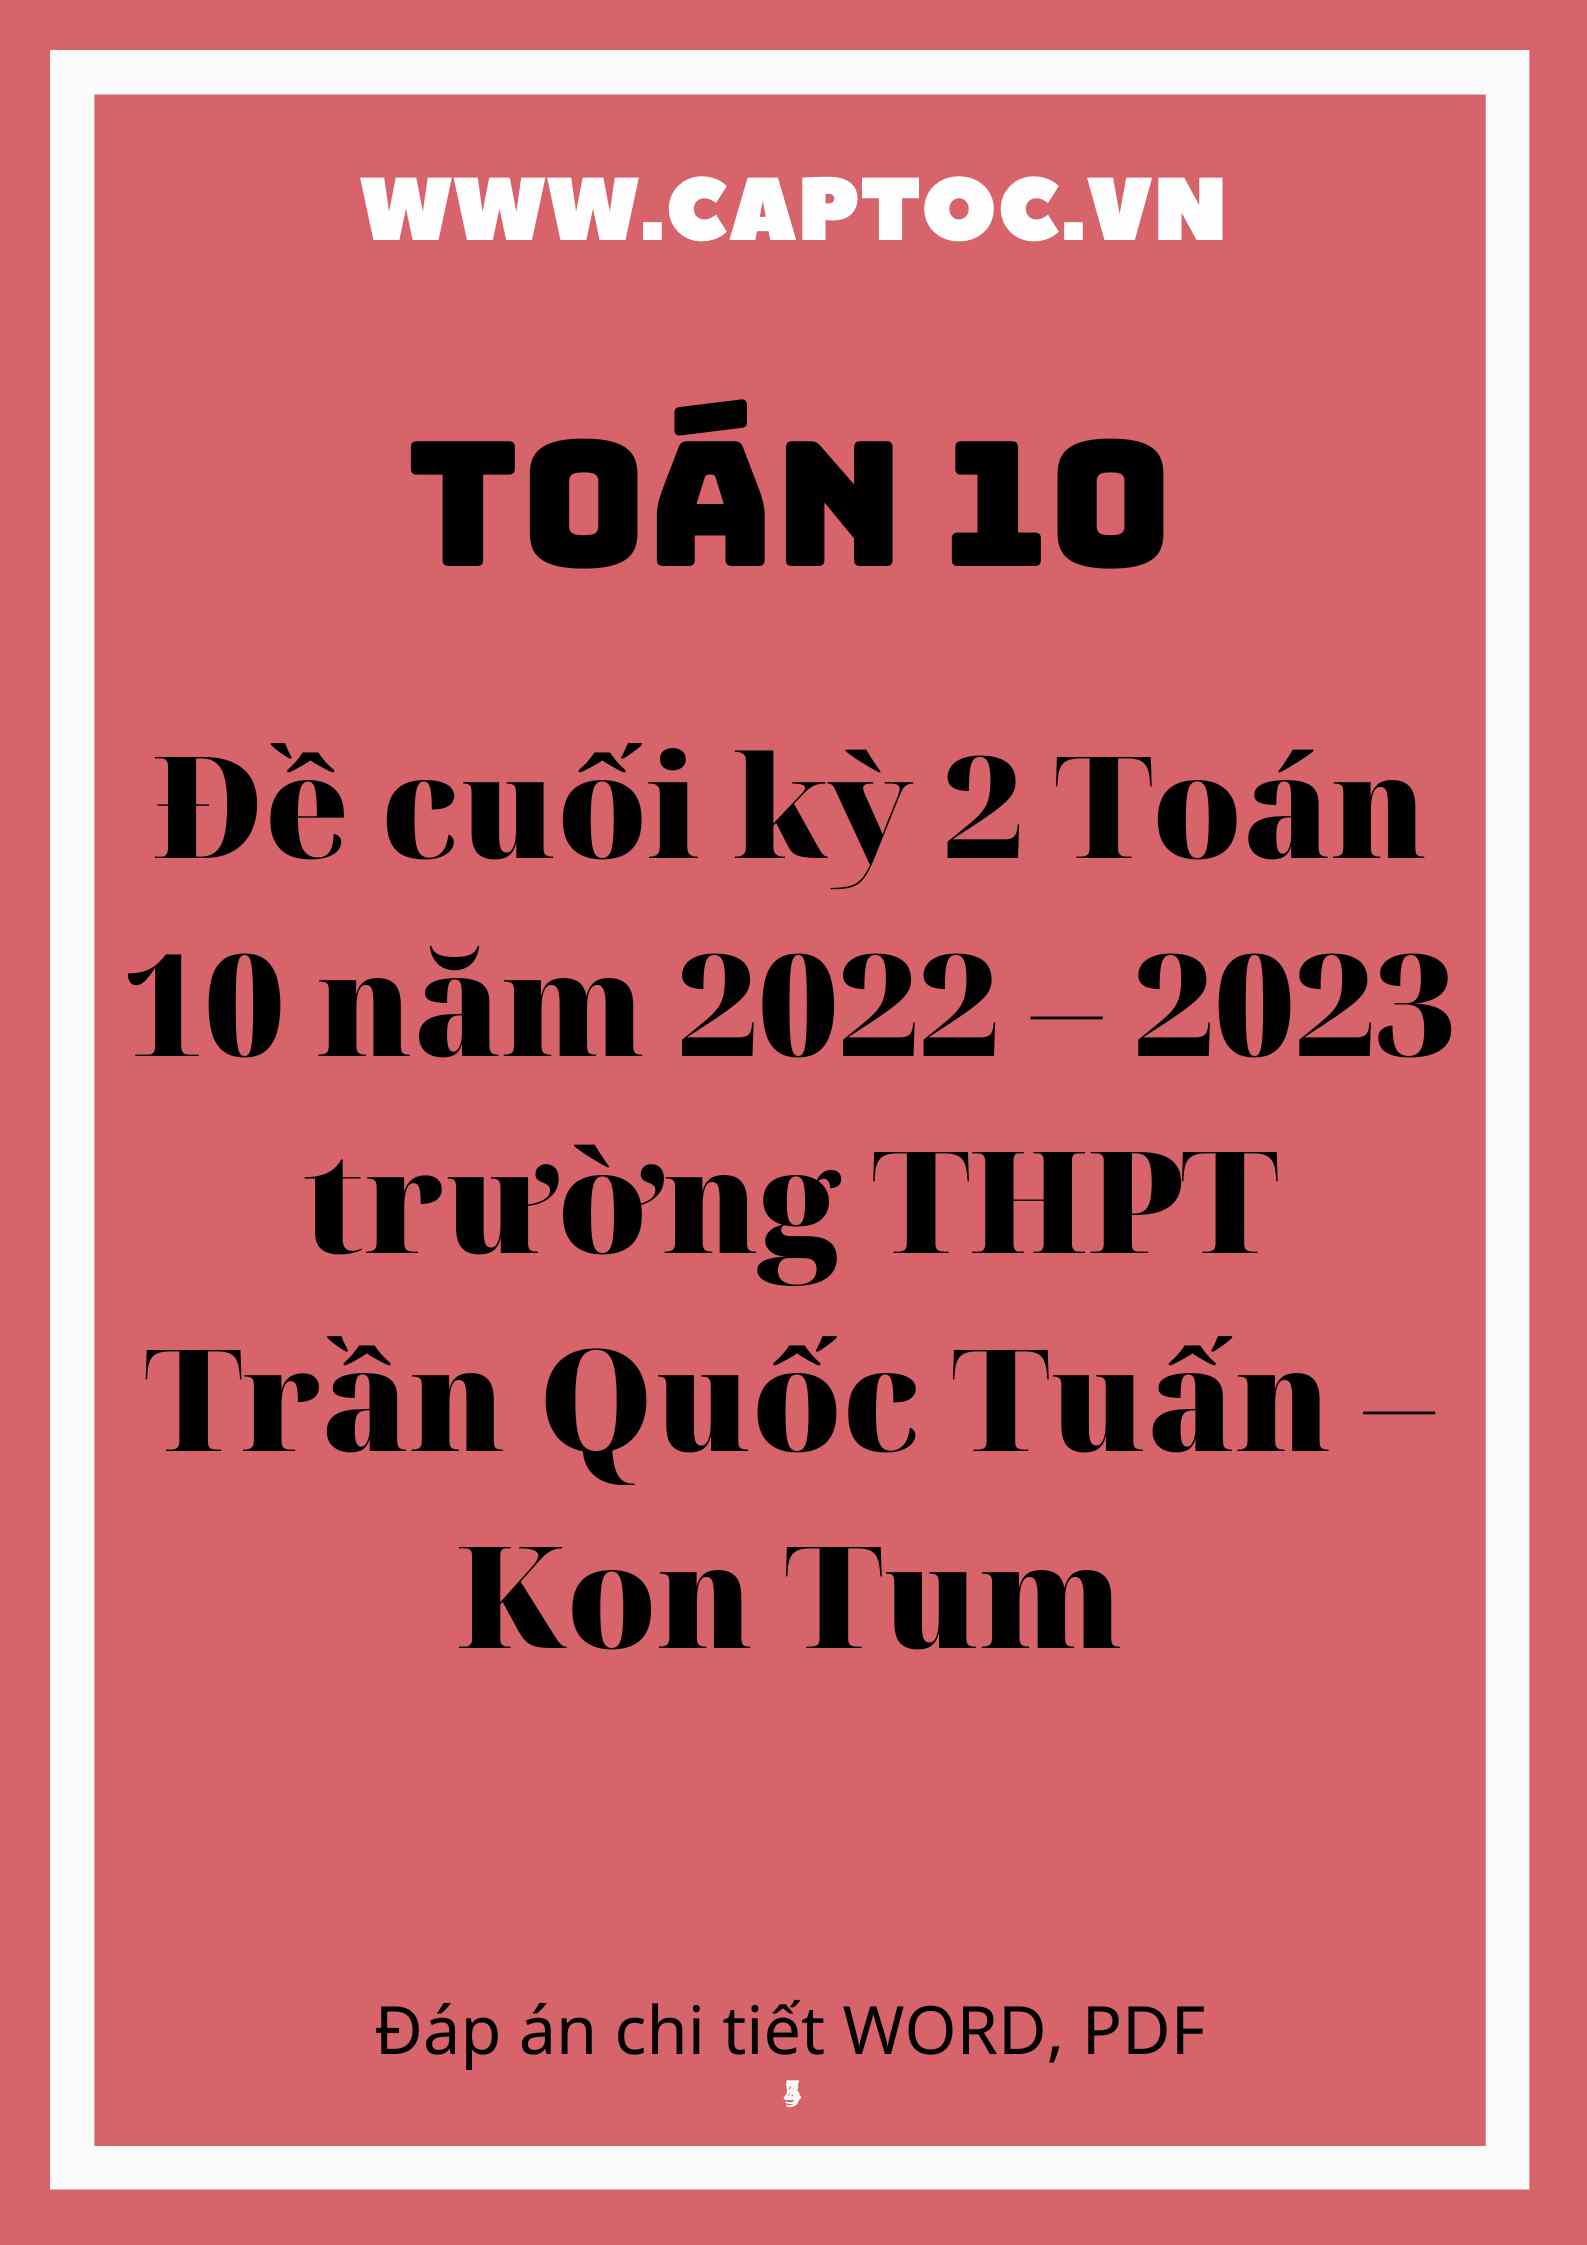 Đề cuối kỳ 2 Toán 10 năm 2022 – 2023 trường THPT Trần Quốc Tuấn – Kon Tum